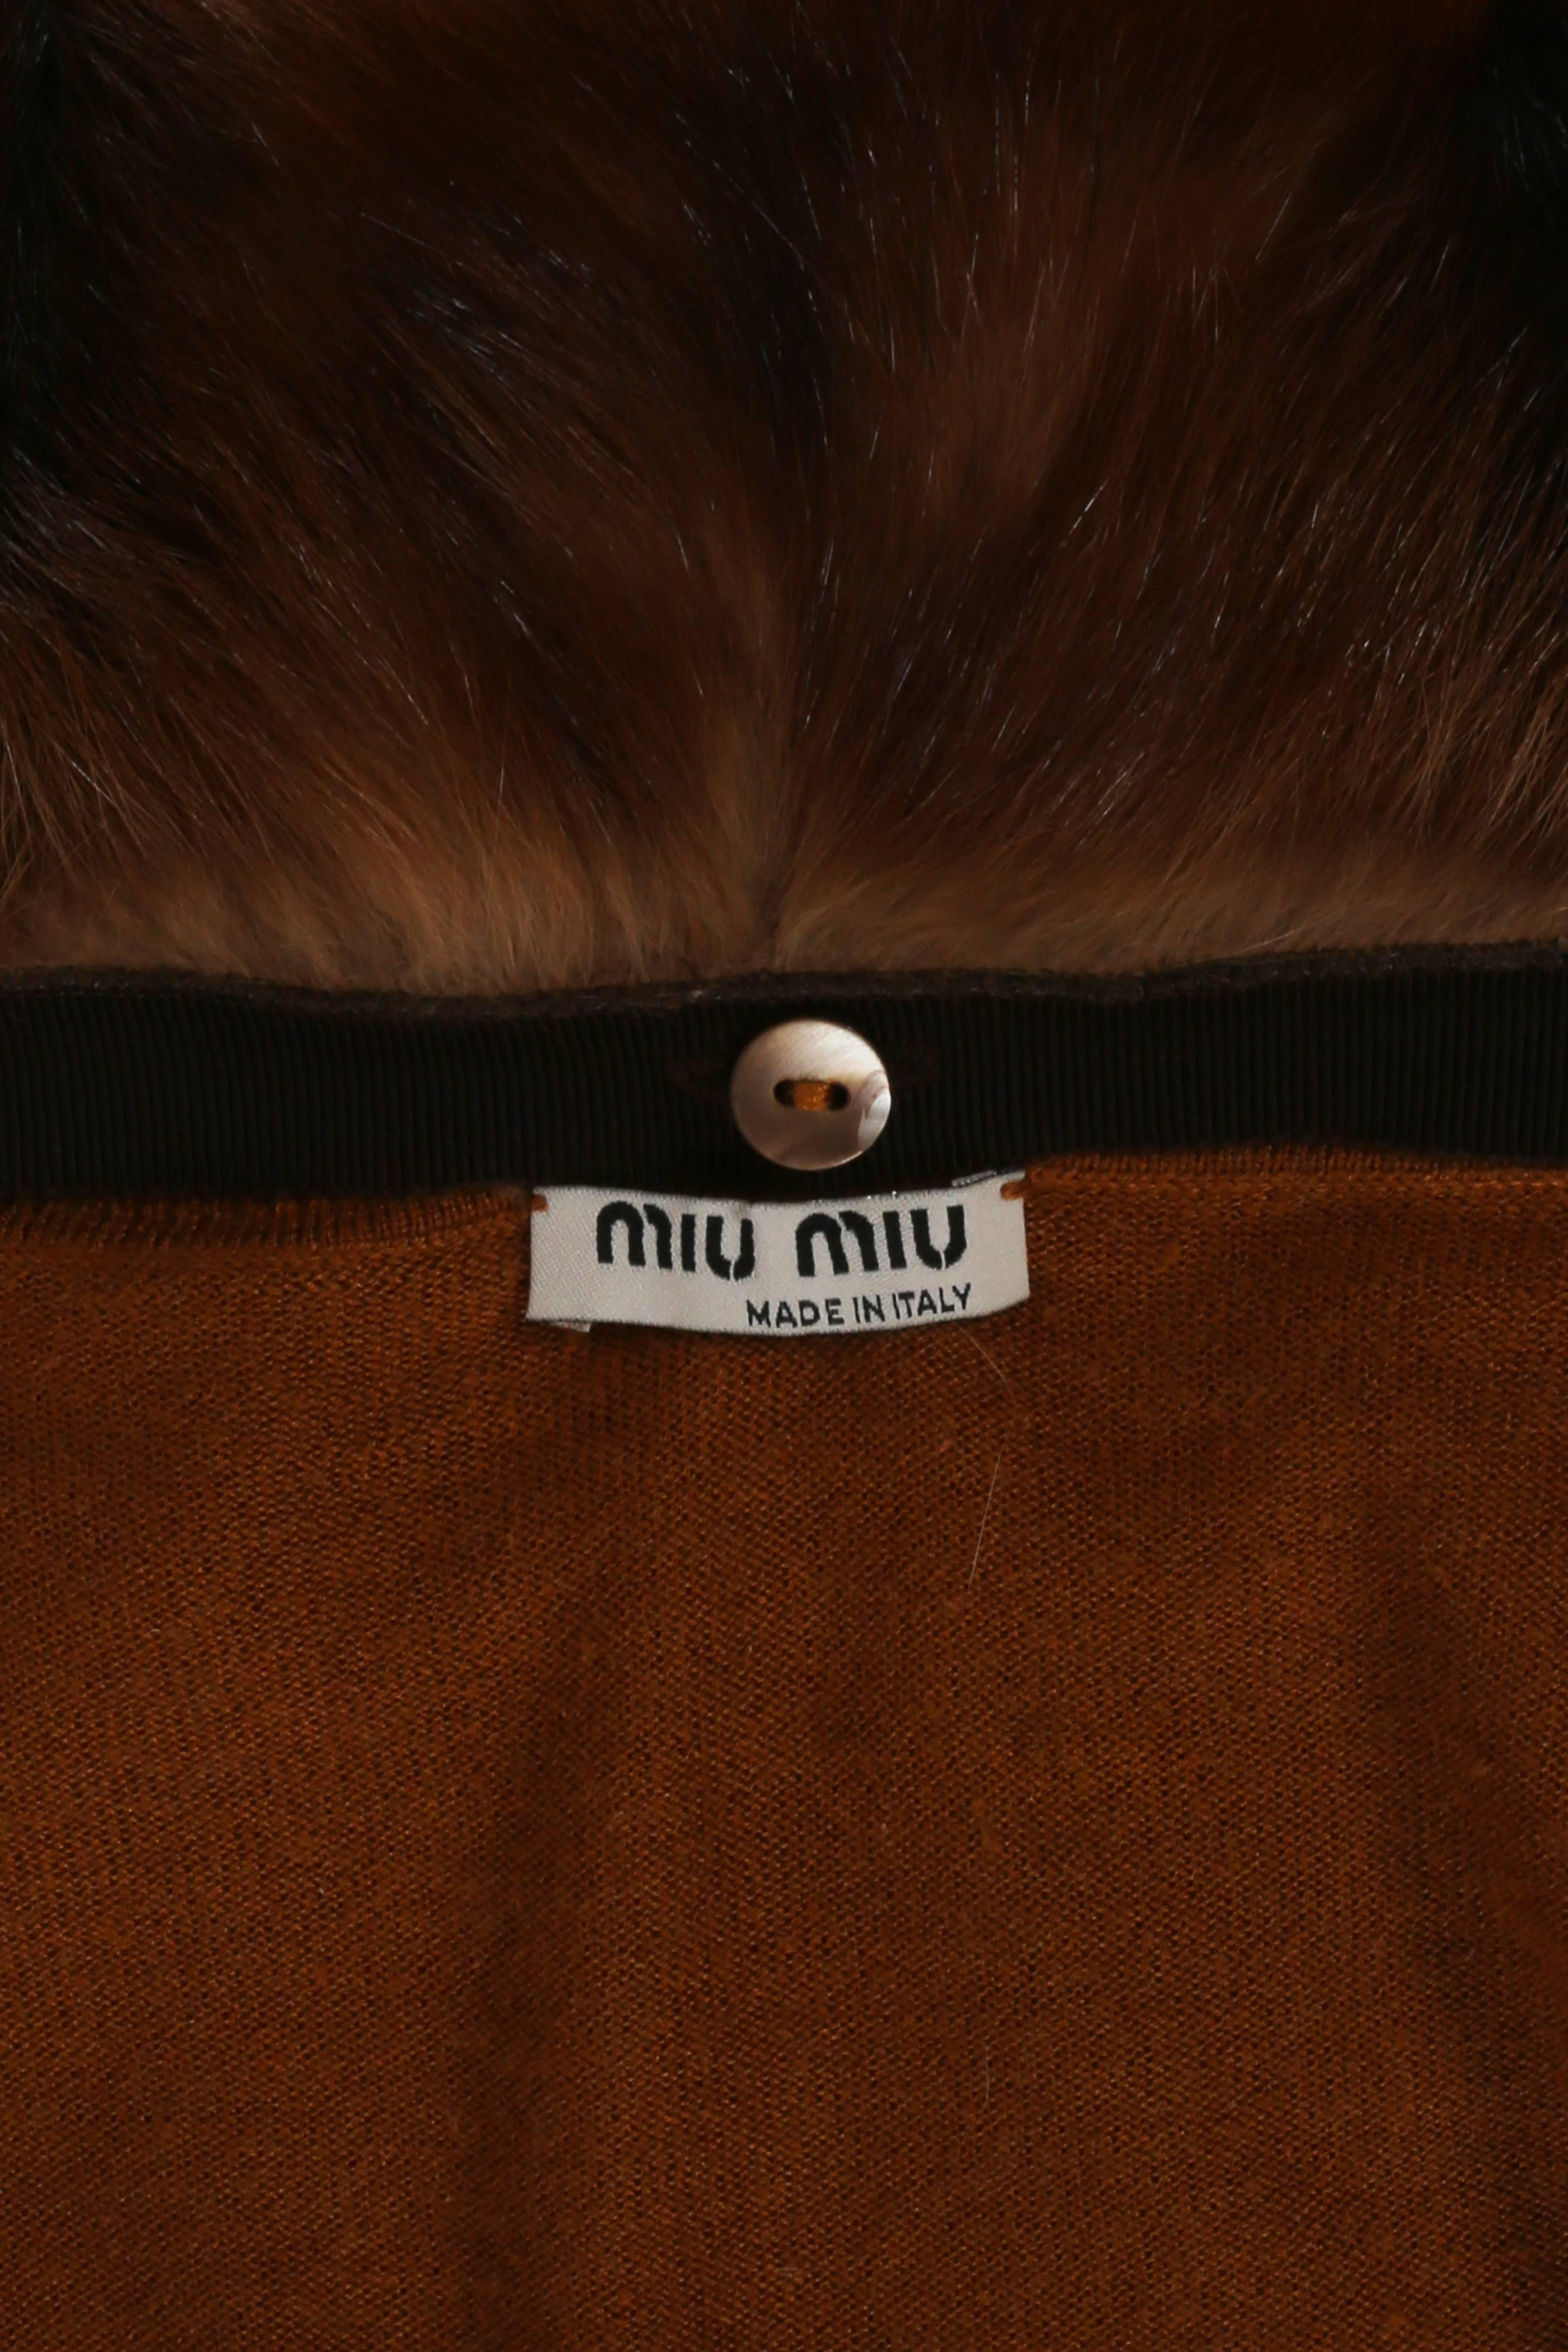 Women's Miu Miu cashmere cardigan with fur collar, circa 2004